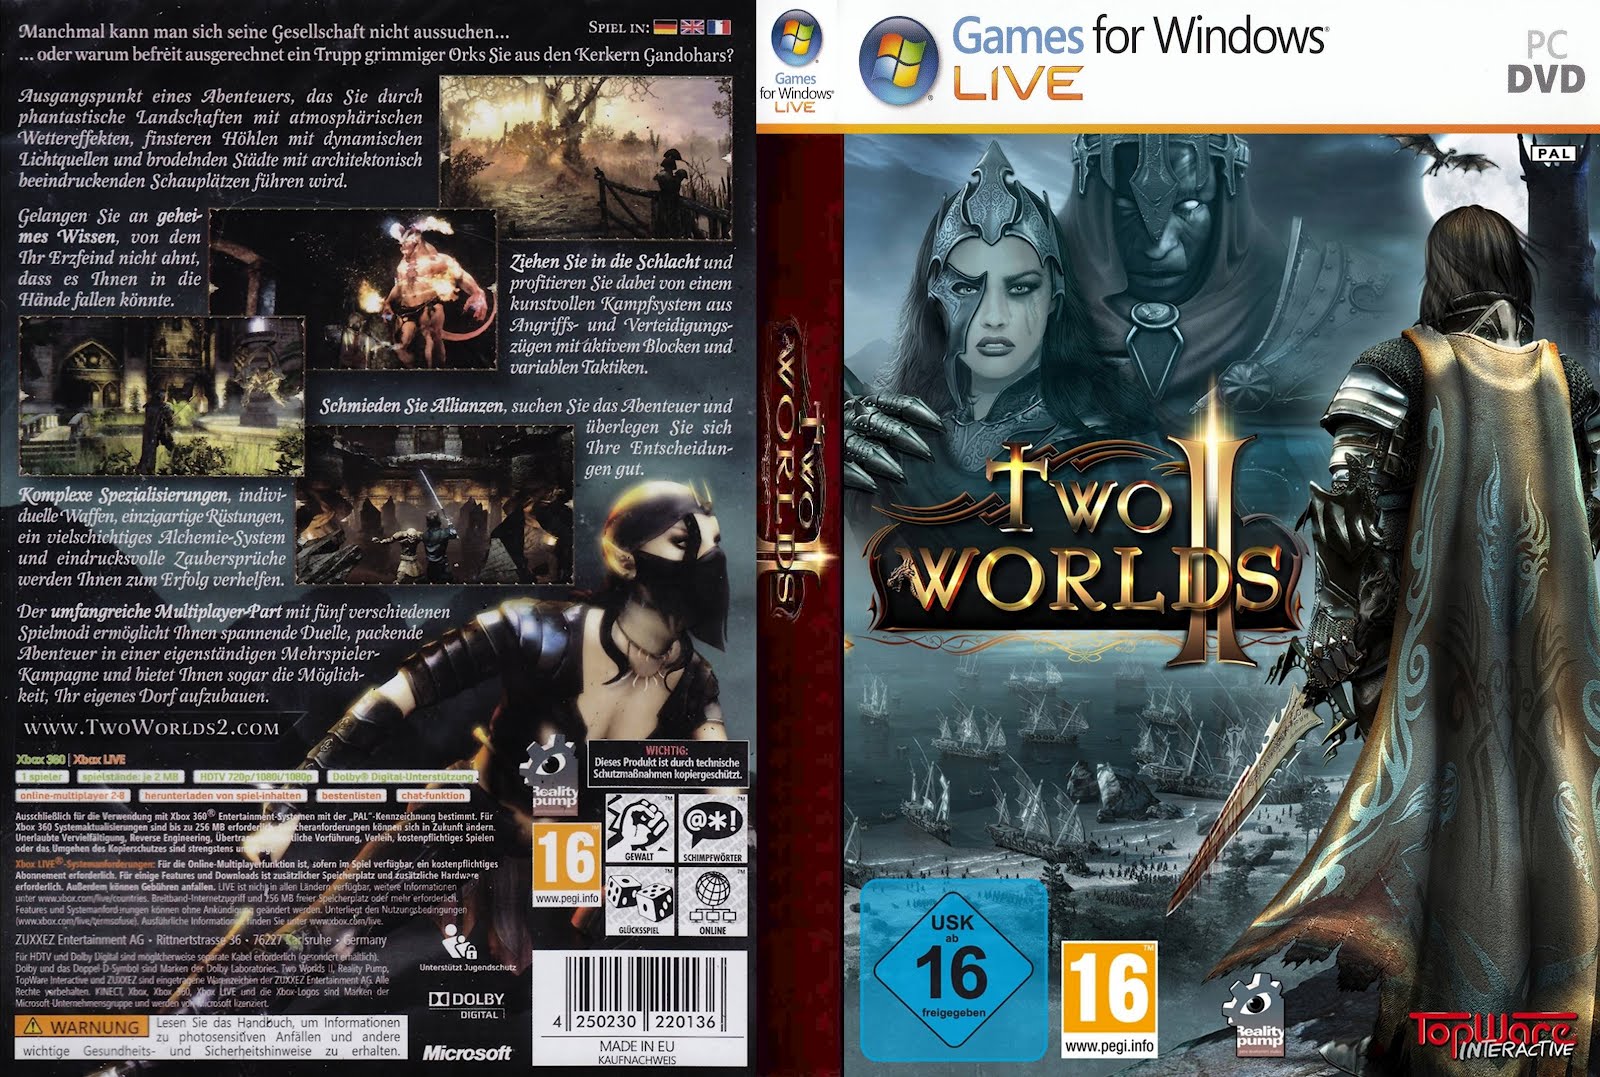 Сборник игр 2. Two Worlds 2 обложка диска. Сордагон two Worlds 2. Two Worlds Epic Edition обложка. Two Worlds 2 Epic Edition обзор.